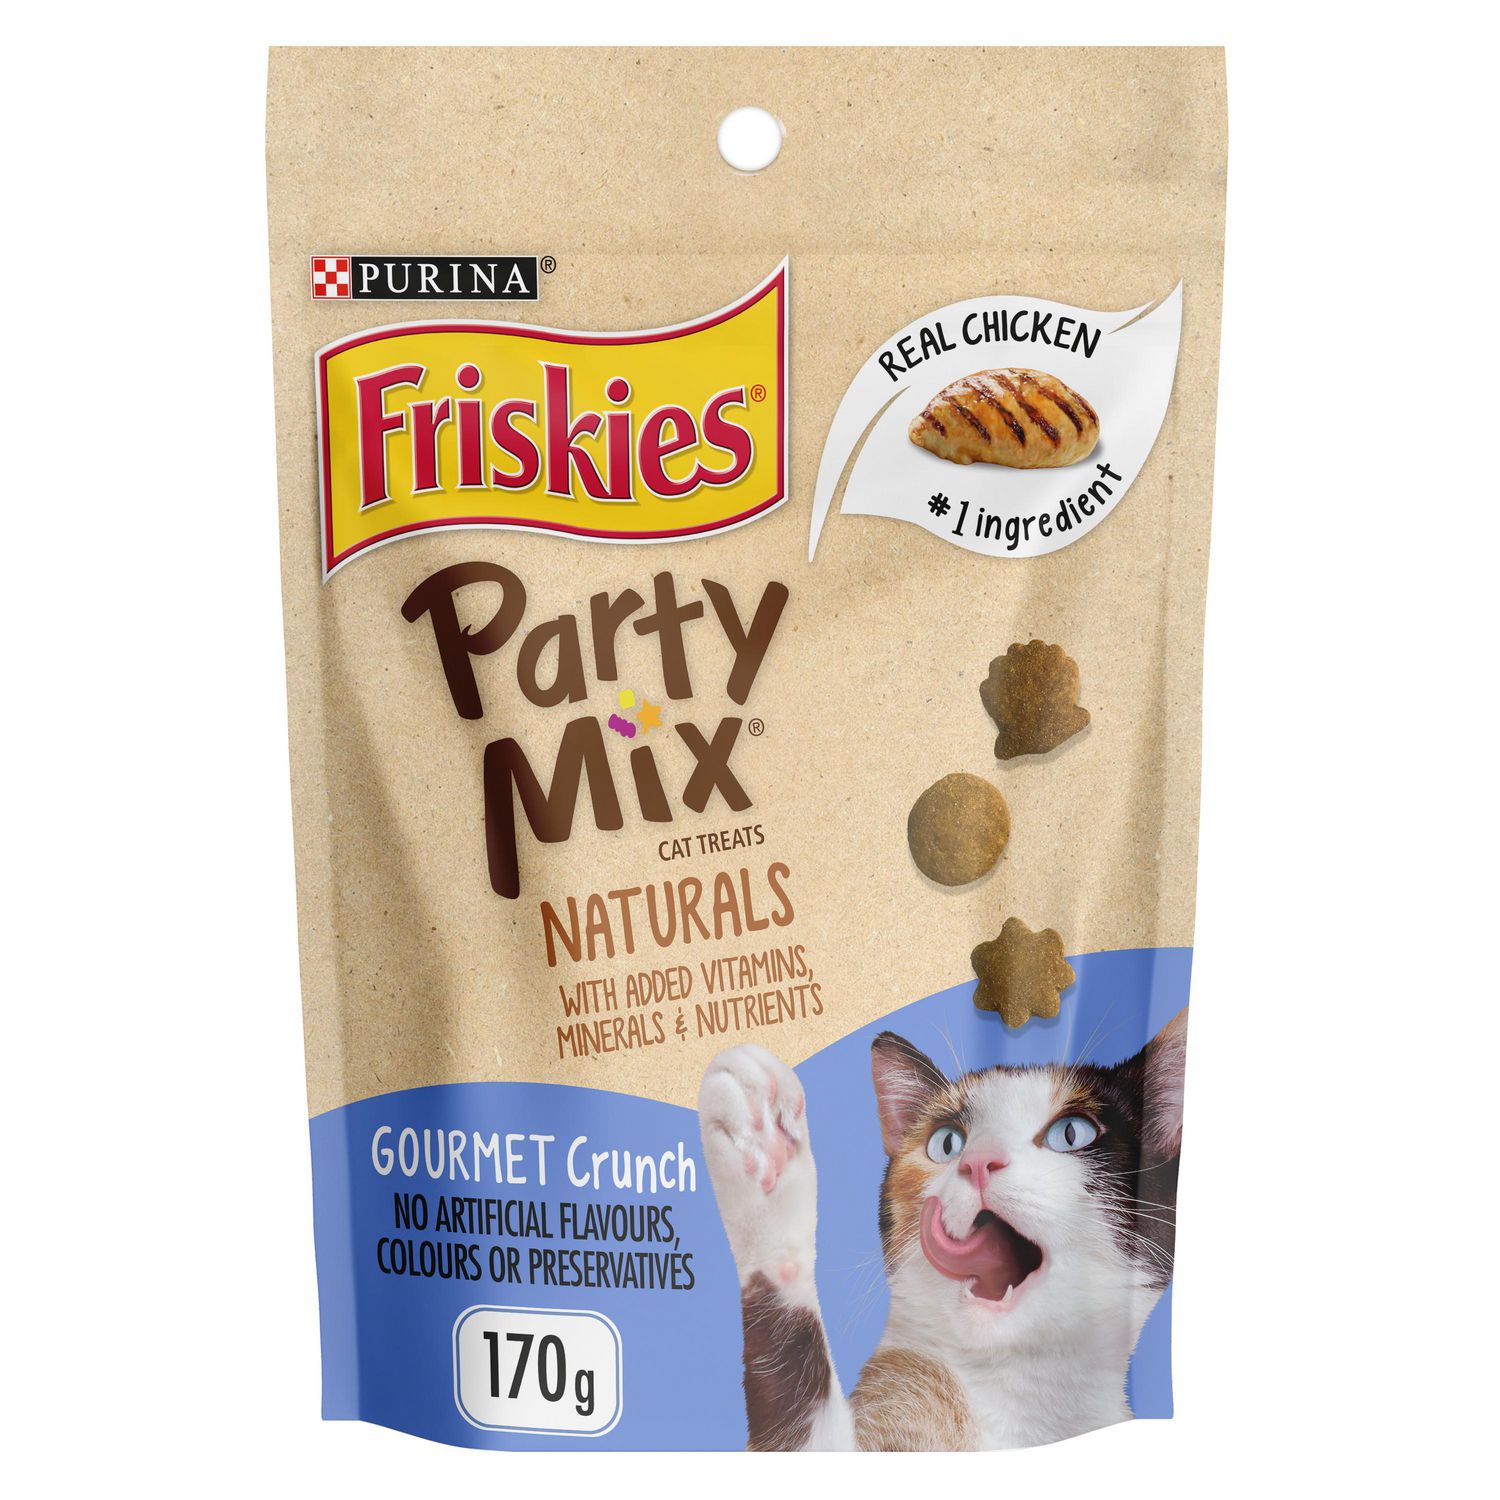 Friskies Party Mix Natural Cat Treats, Gourmet Crunch Walmart Canada